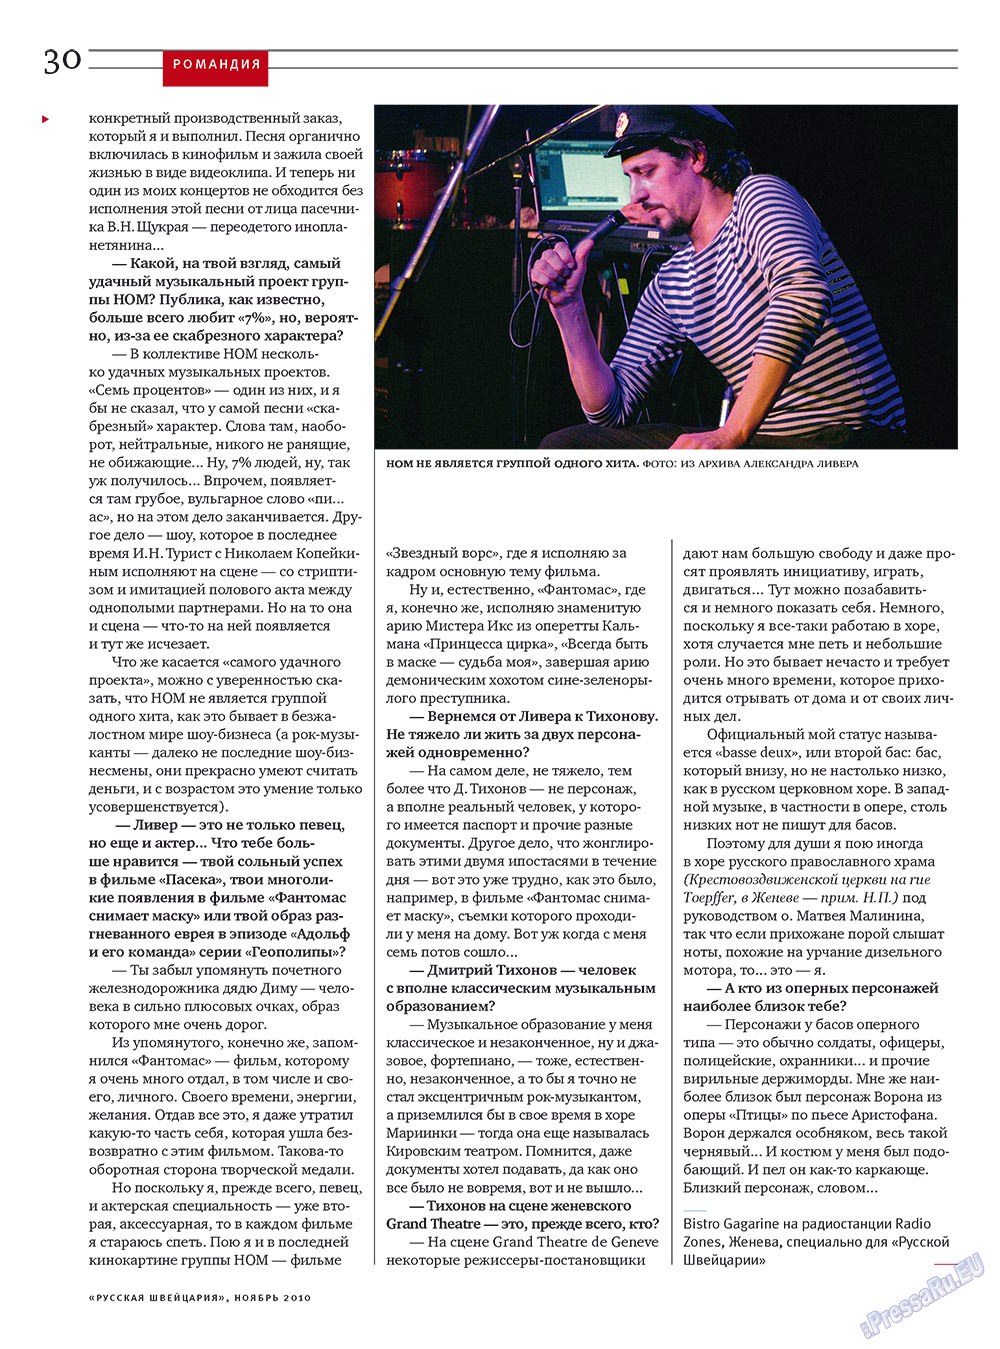 Русская Швейцария, журнал. 2010 №9 стр.30